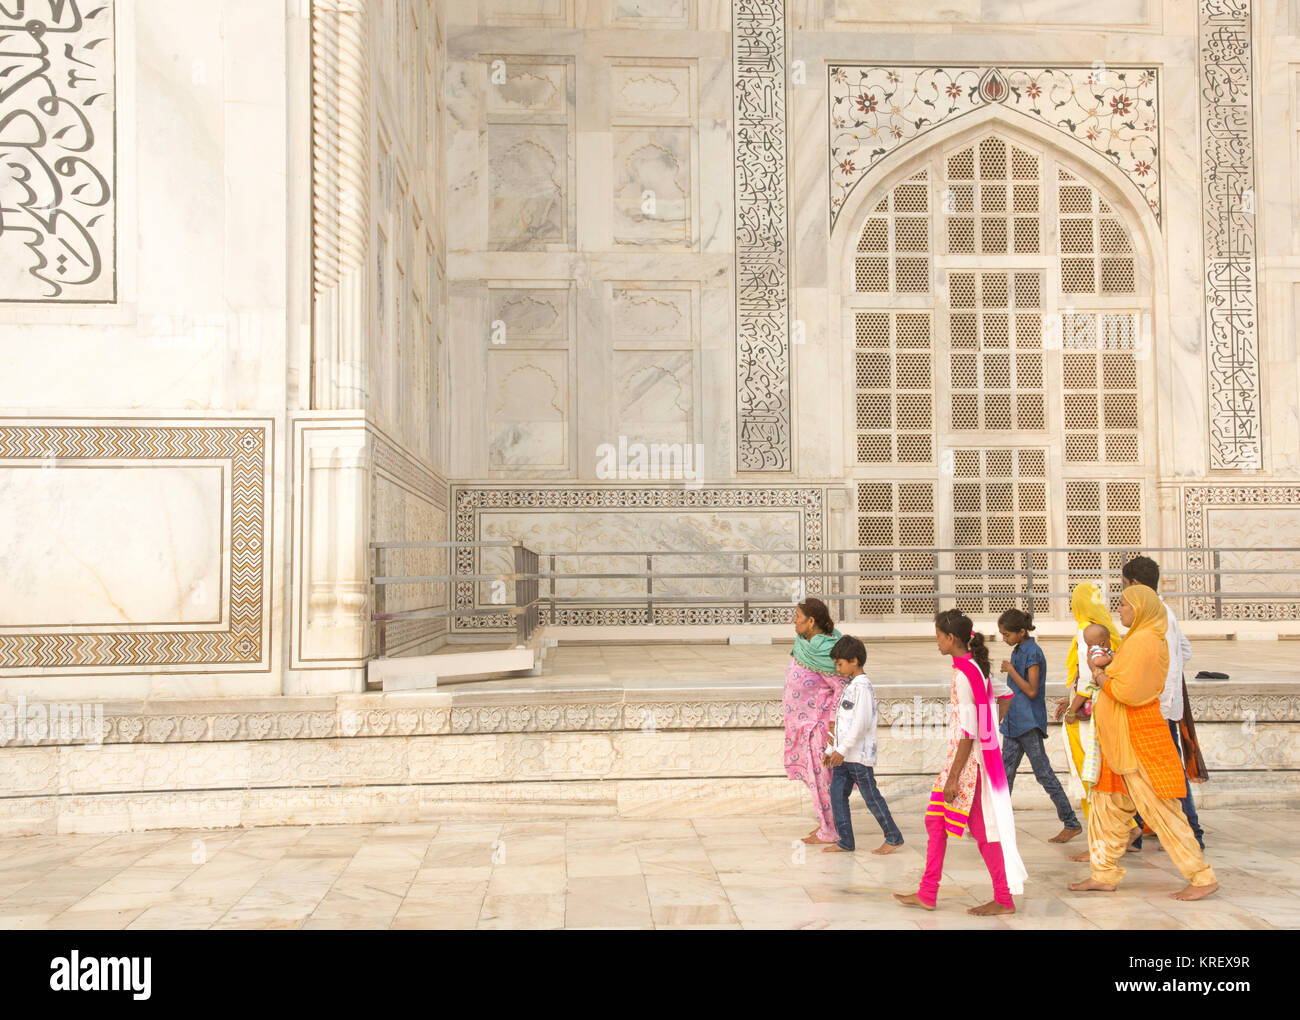 Grandes multitudes, de todo el mundo, visite el Taj Mahal cada día está abierto. Foto de stock